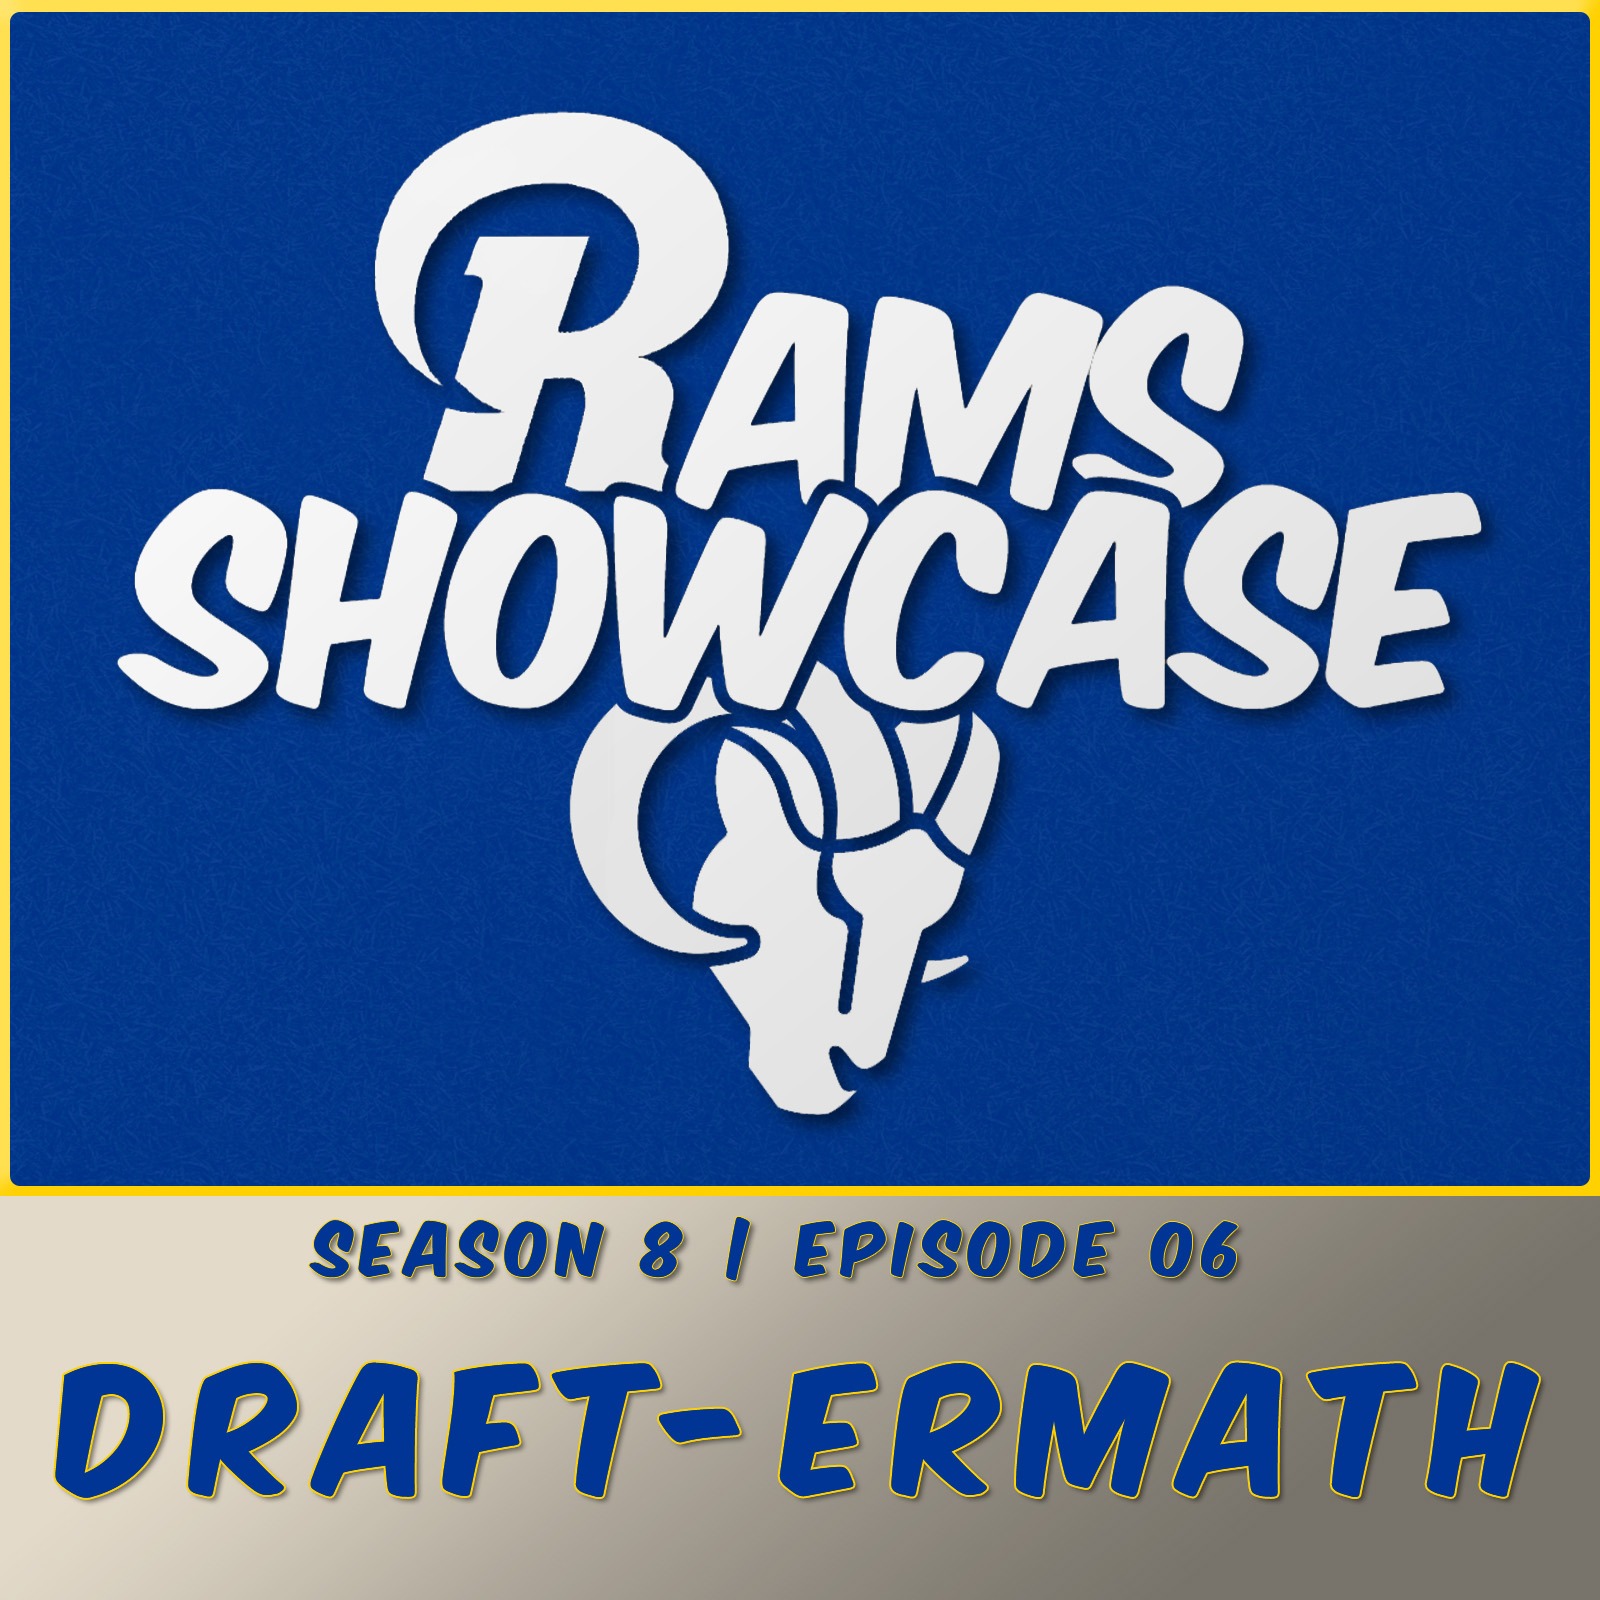 Episode 06 - Draft-ermath